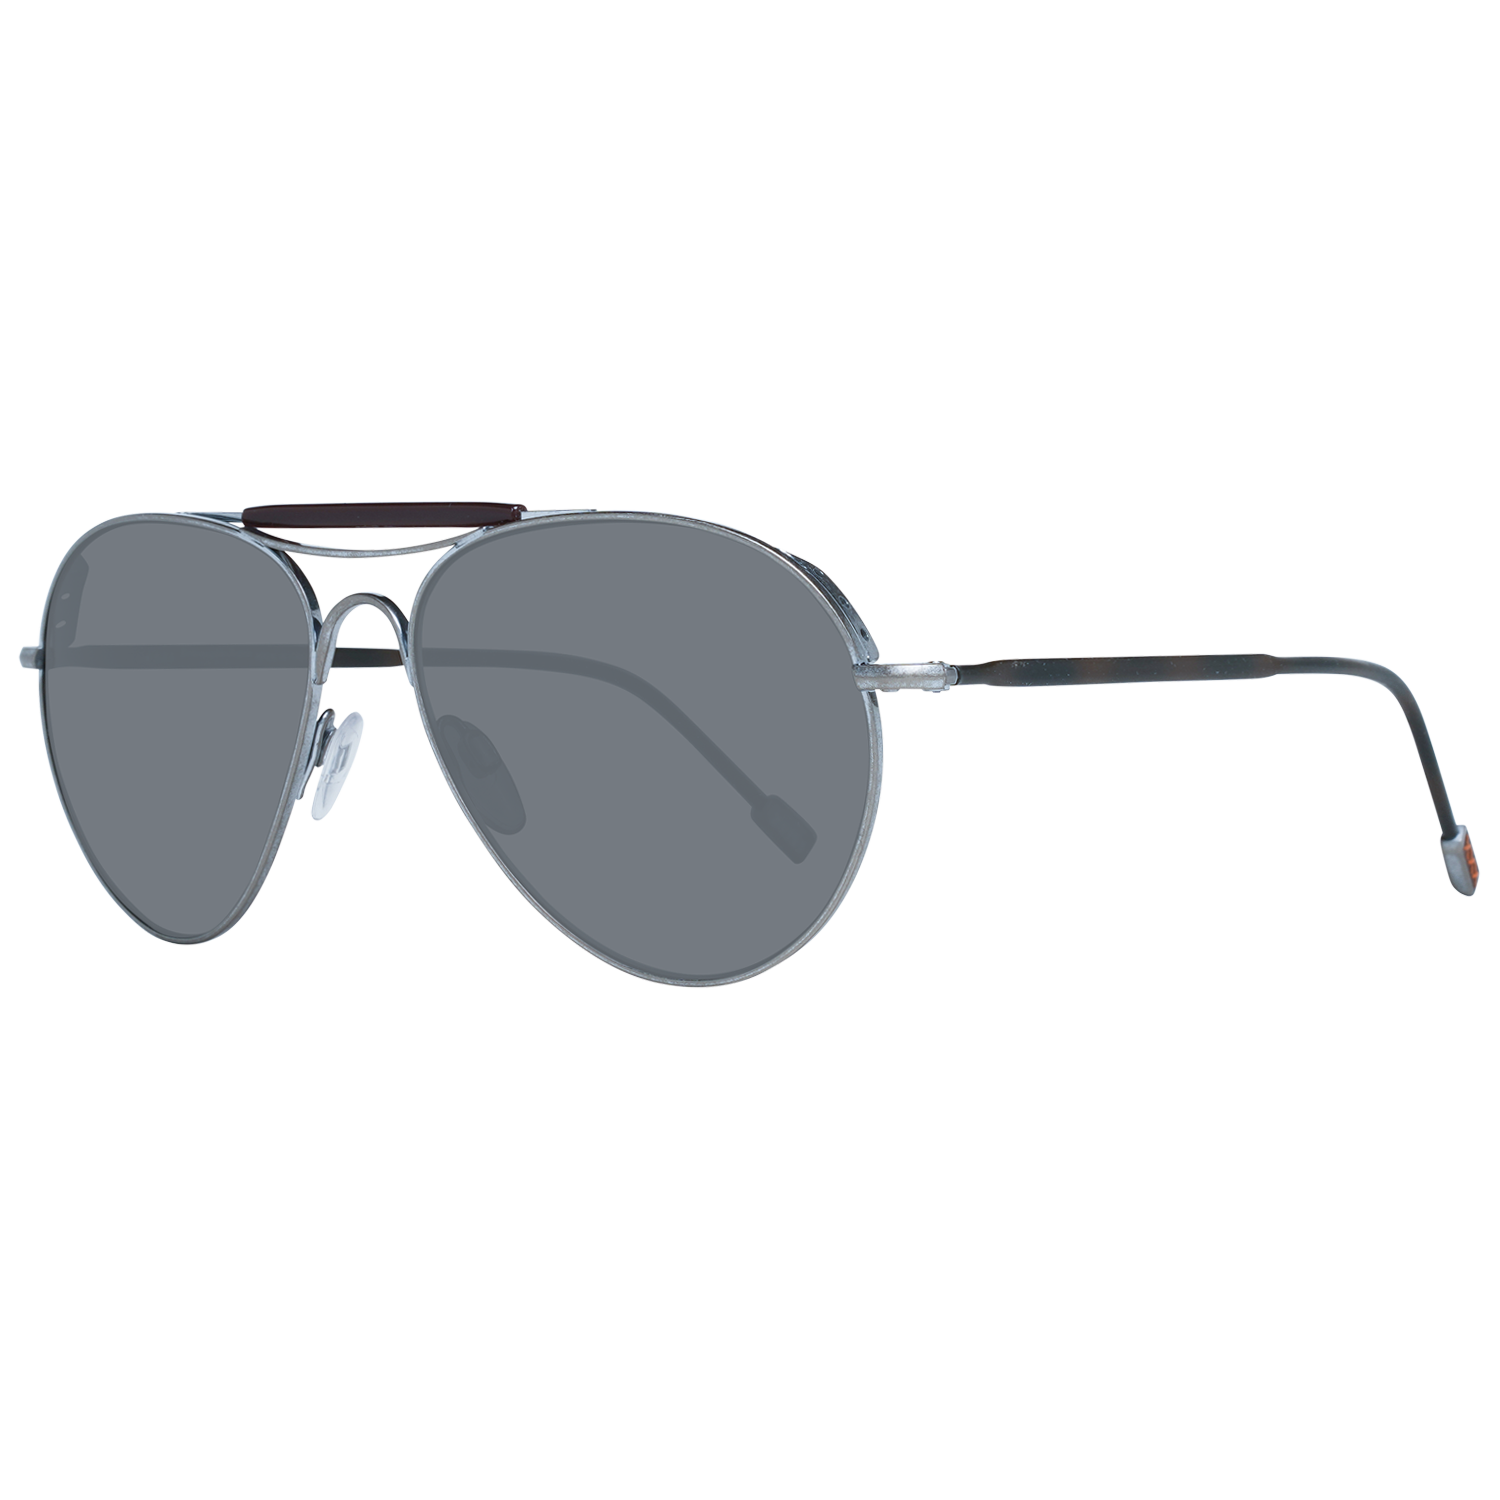 Zegna Couture Sunglasses Zegna Couture Sunglasses ZC0020 57 15A Titanium Eyeglasses Eyewear UK USA Australia 